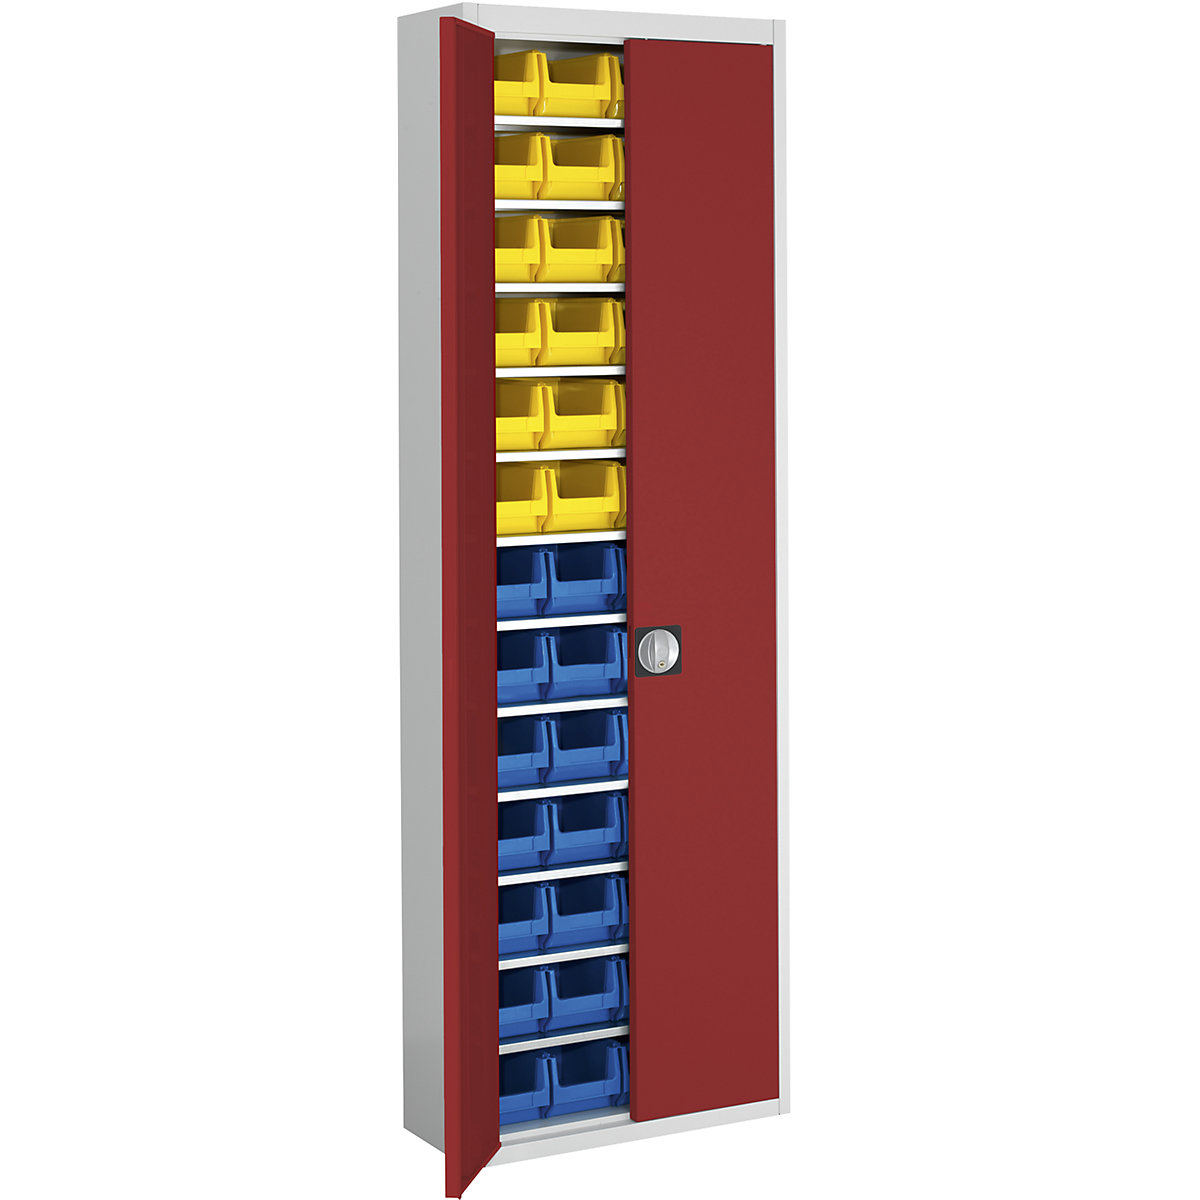 Magazinschrank mit Sichtlagerkästen mauser, HxBxT 2150 x 680 x 280 mm, zweifarbig, Korpus grau, Türen rot, 52 Kästen-6